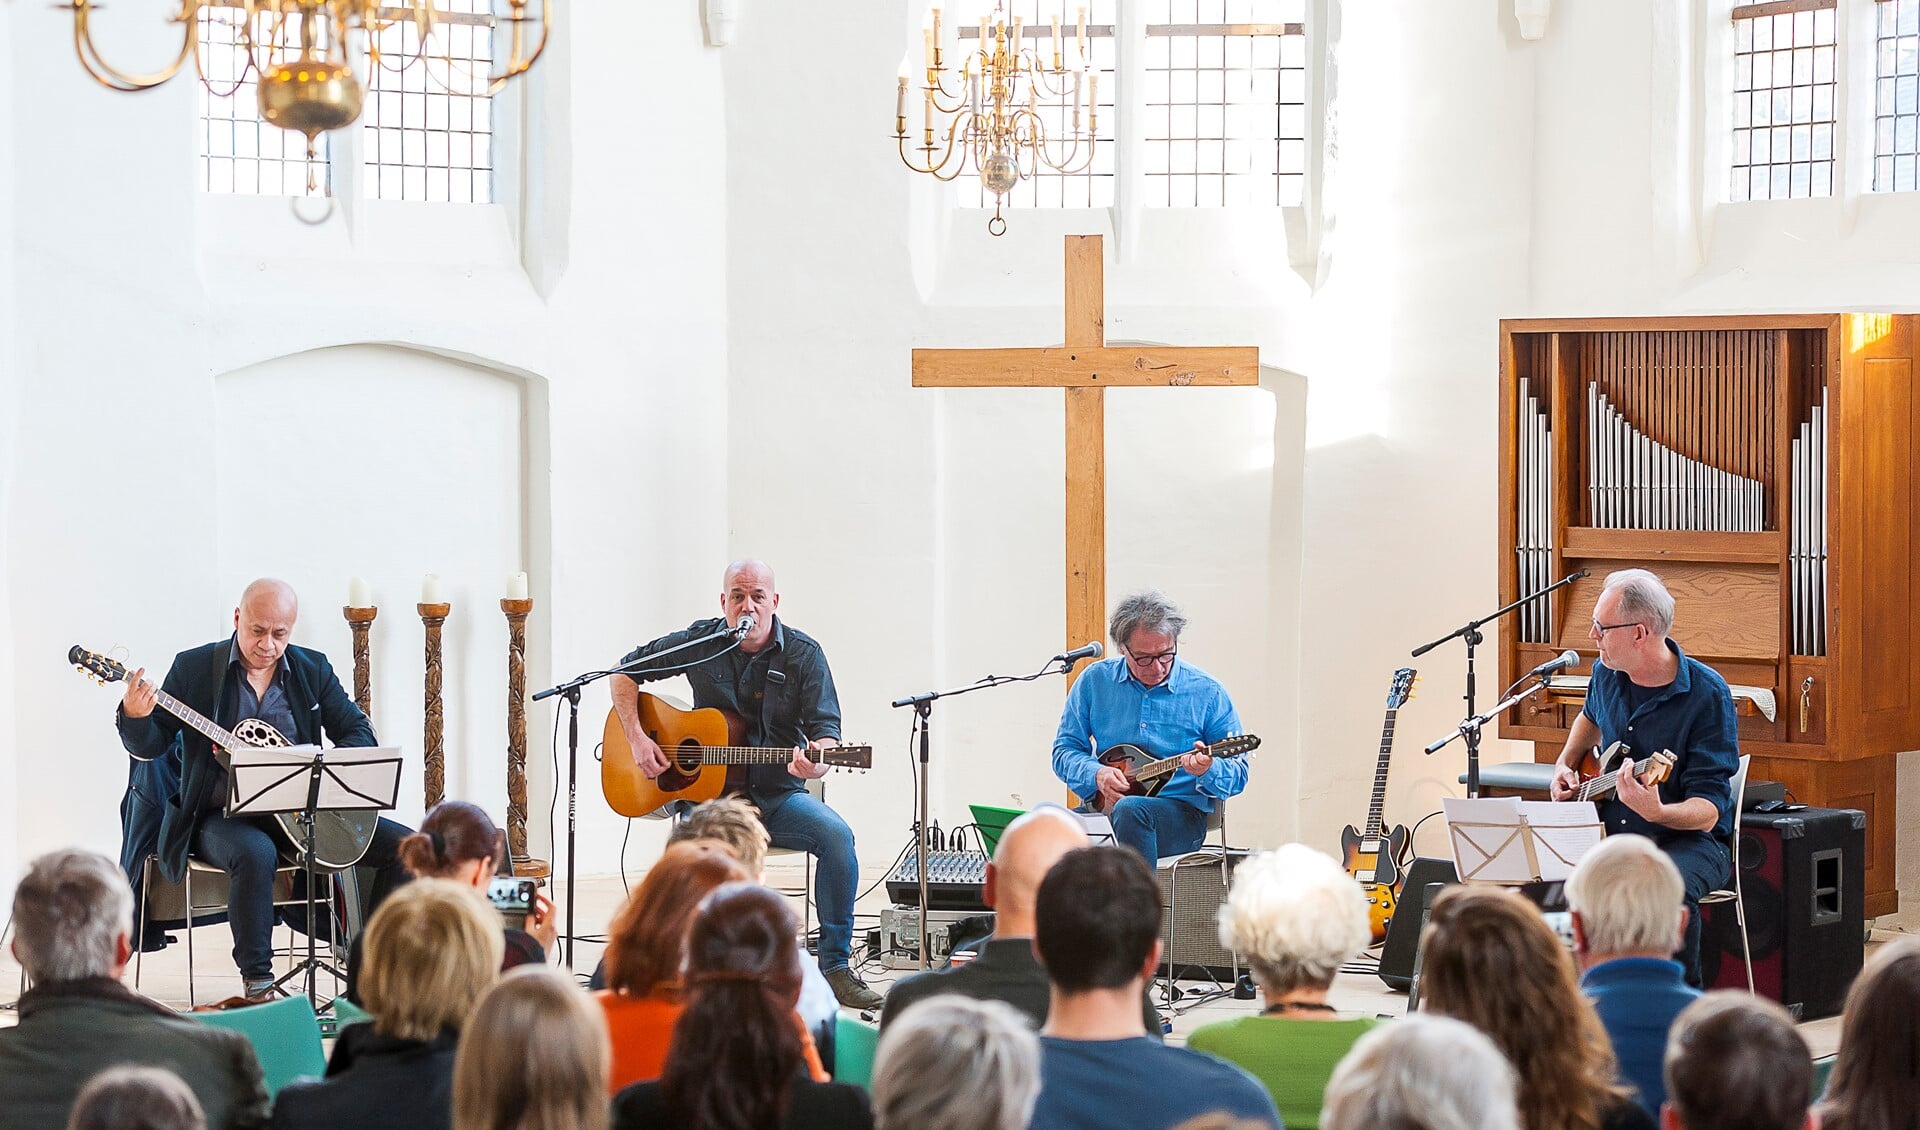 Concert Luc te Brinck concerteret met vrienden in de protestantse kerk in Silvolde. Foto: Henk van Raaij